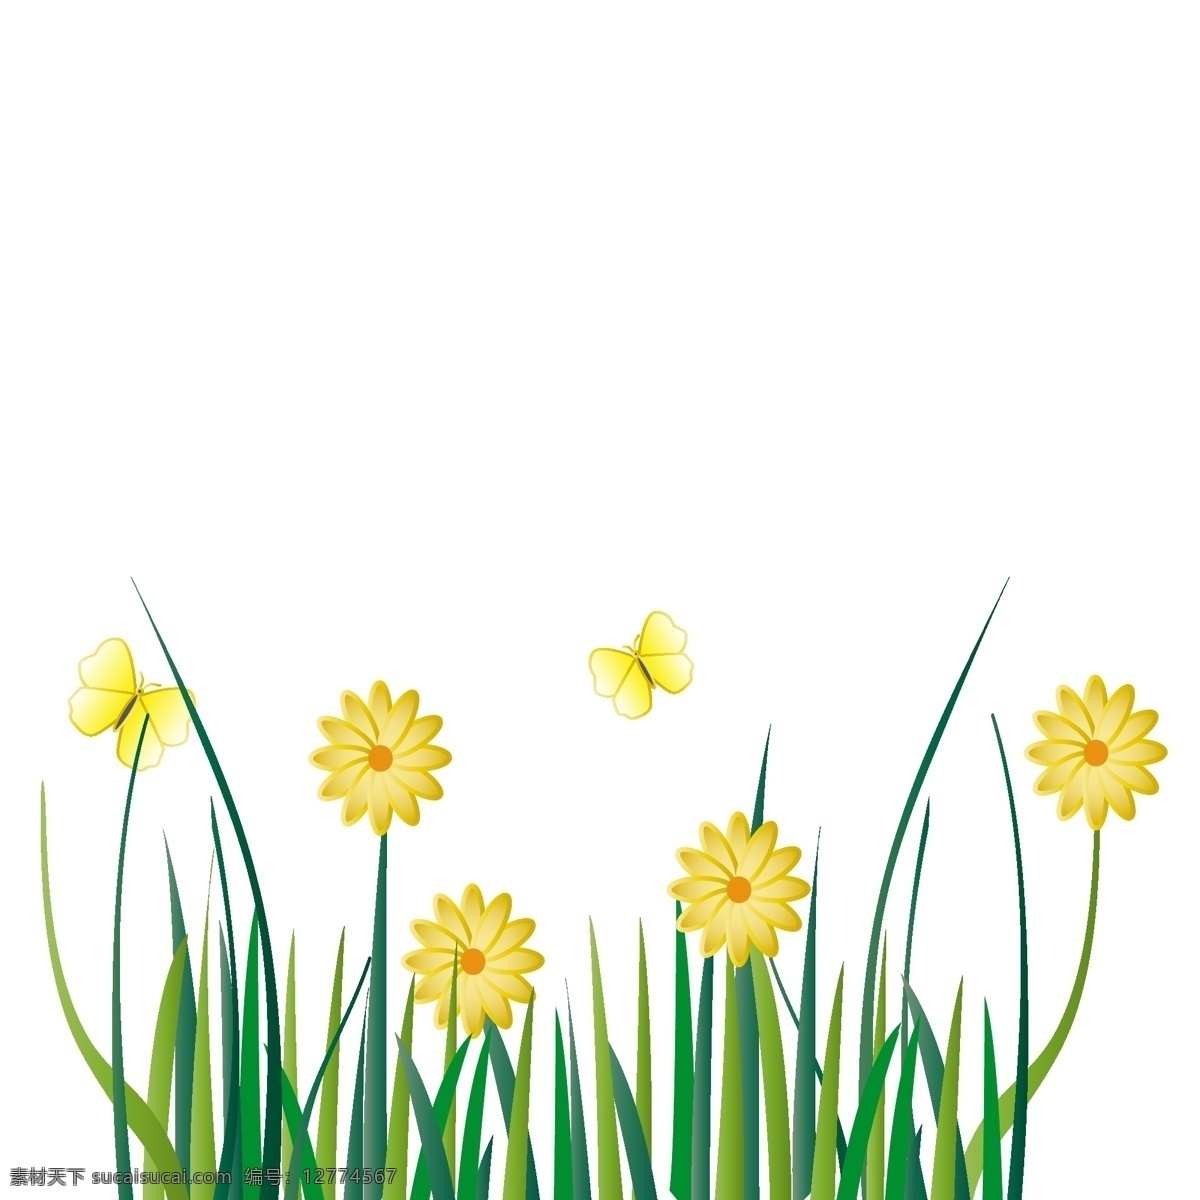 绿色 草丛 矢量 手绘 元素 夏日 蝴蝶 夏日香气 黄色 黄色花朵 黄色小花 花间 原创 装饰